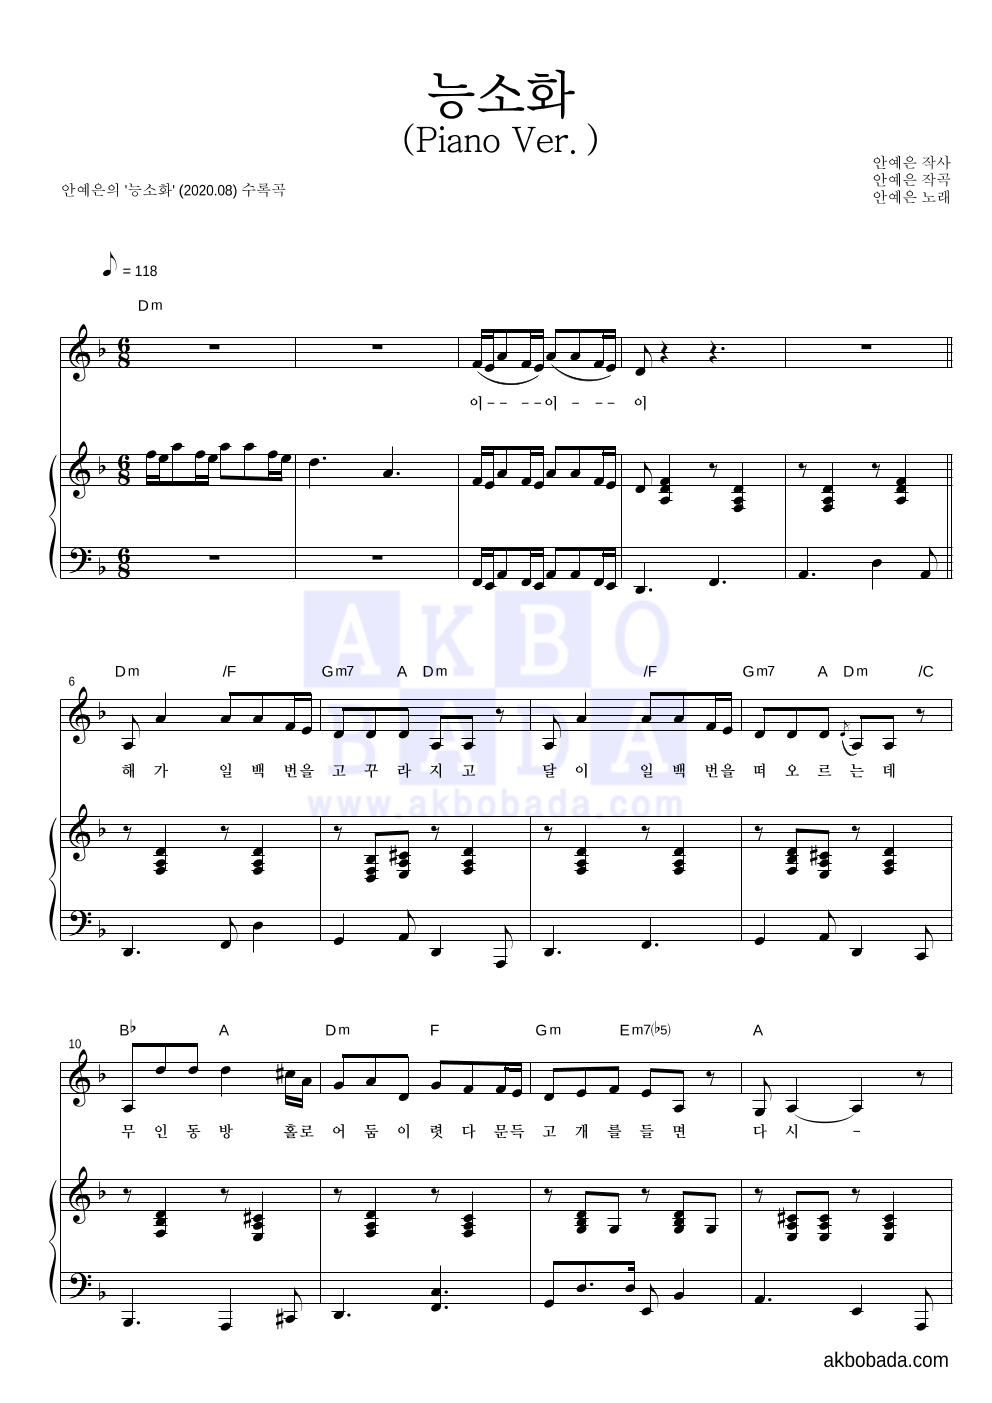 안예은 - 능소화 (Piano Ver.) 피아노 3단 악보 